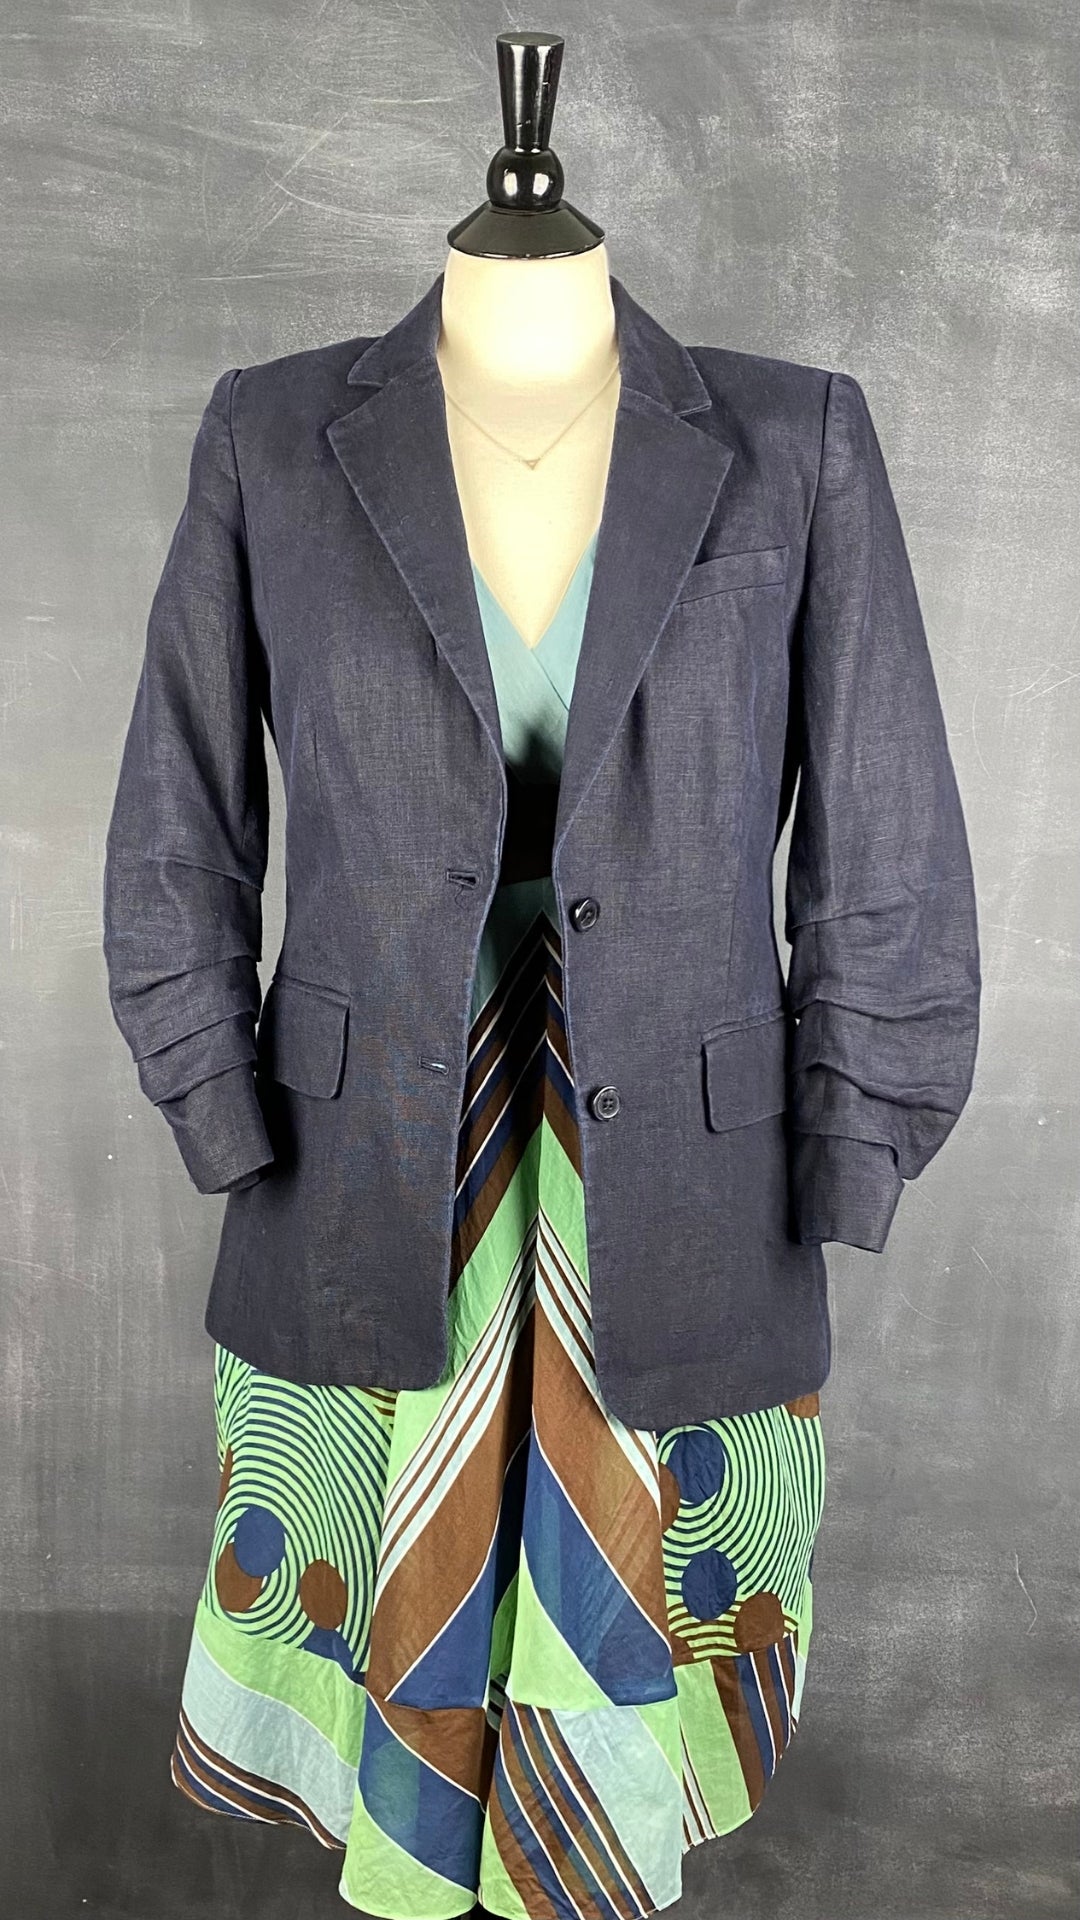 Robe à rayures et motifs géo en soie et coton BCBG Max Azria, taille 6. Vue de l'agencement avec le blazer en lin Michael Kors.